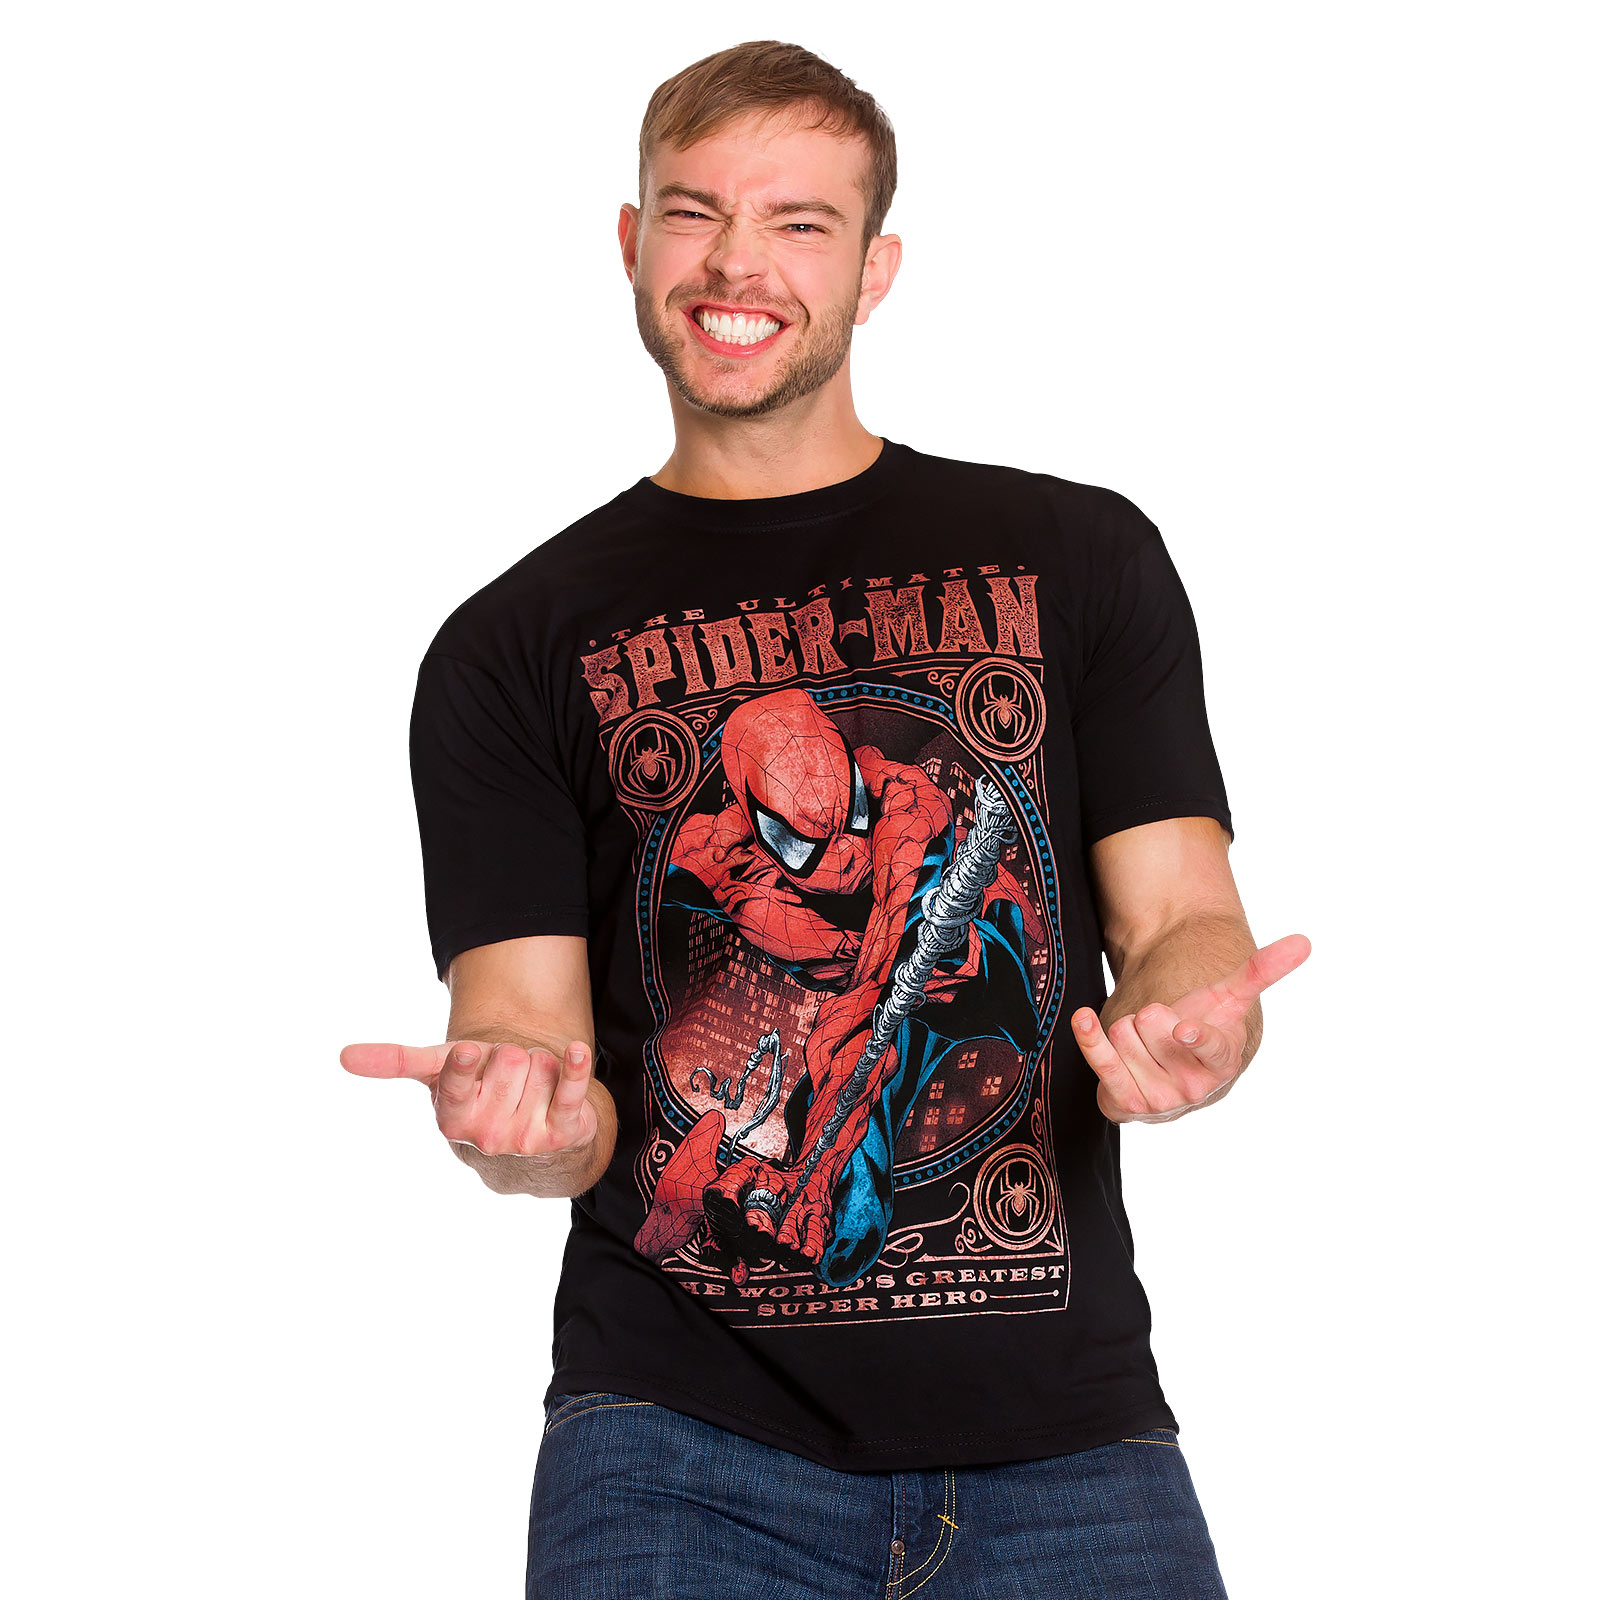 Spider-Man - Greatest Super Hero T-Shirt black